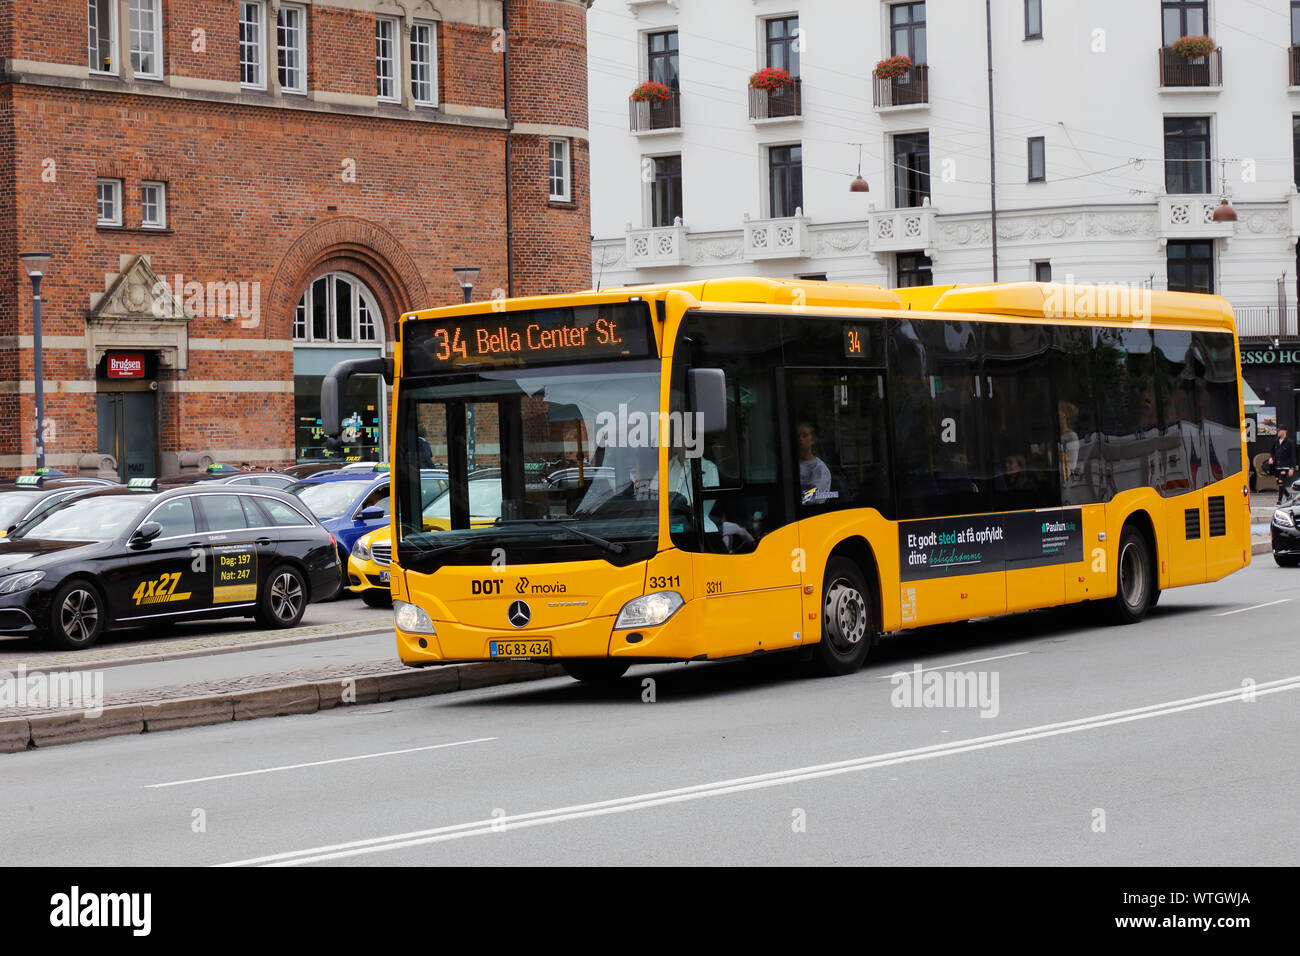 Kopenhagen, Dänemark - 4 September, 2019: Gelb city Bus in Dienst auf Zeile 34 mit Destination Bella Center. Stockfoto